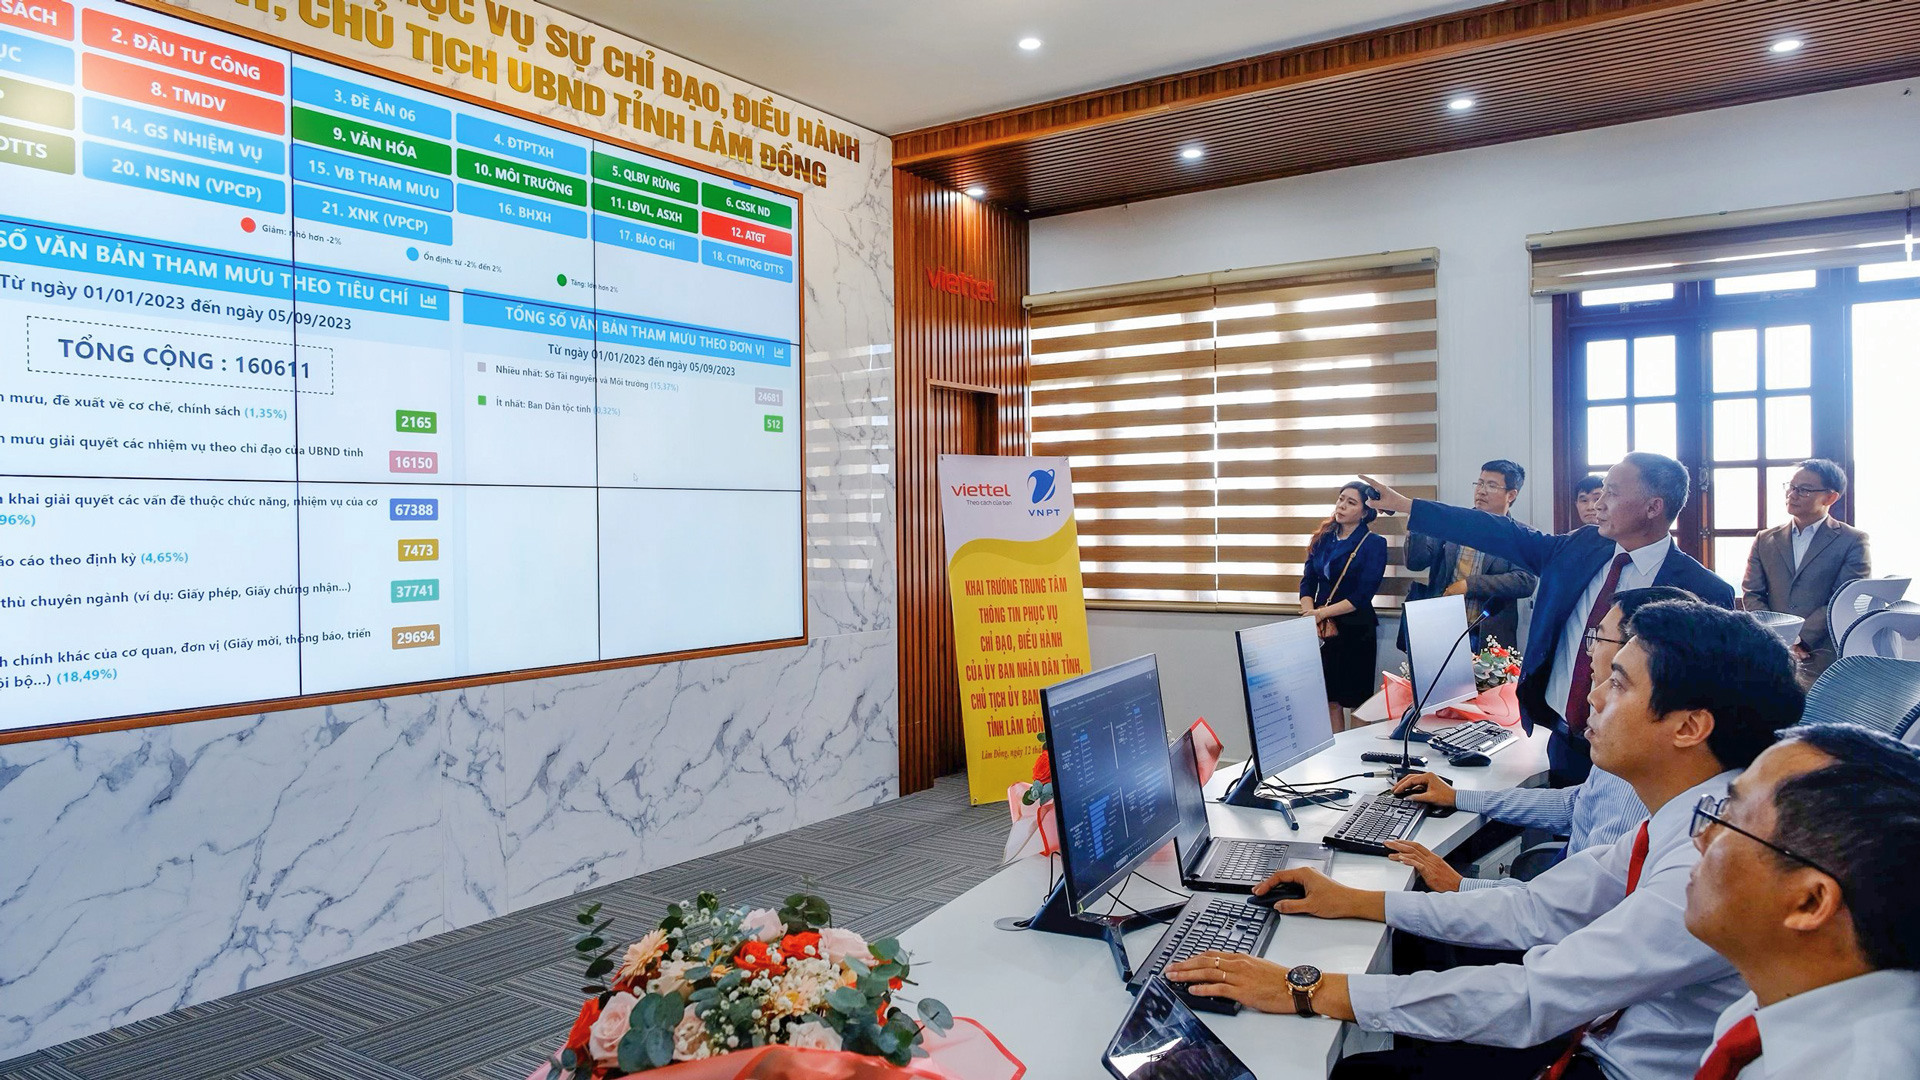 Lâm Đồng là tỉnh đầu tiên khai trương Trung tâm Điều hành thông minh UBND tỉnh, phục vụ chỉ đạo điều hành của Chủ tịch UBND tỉnh